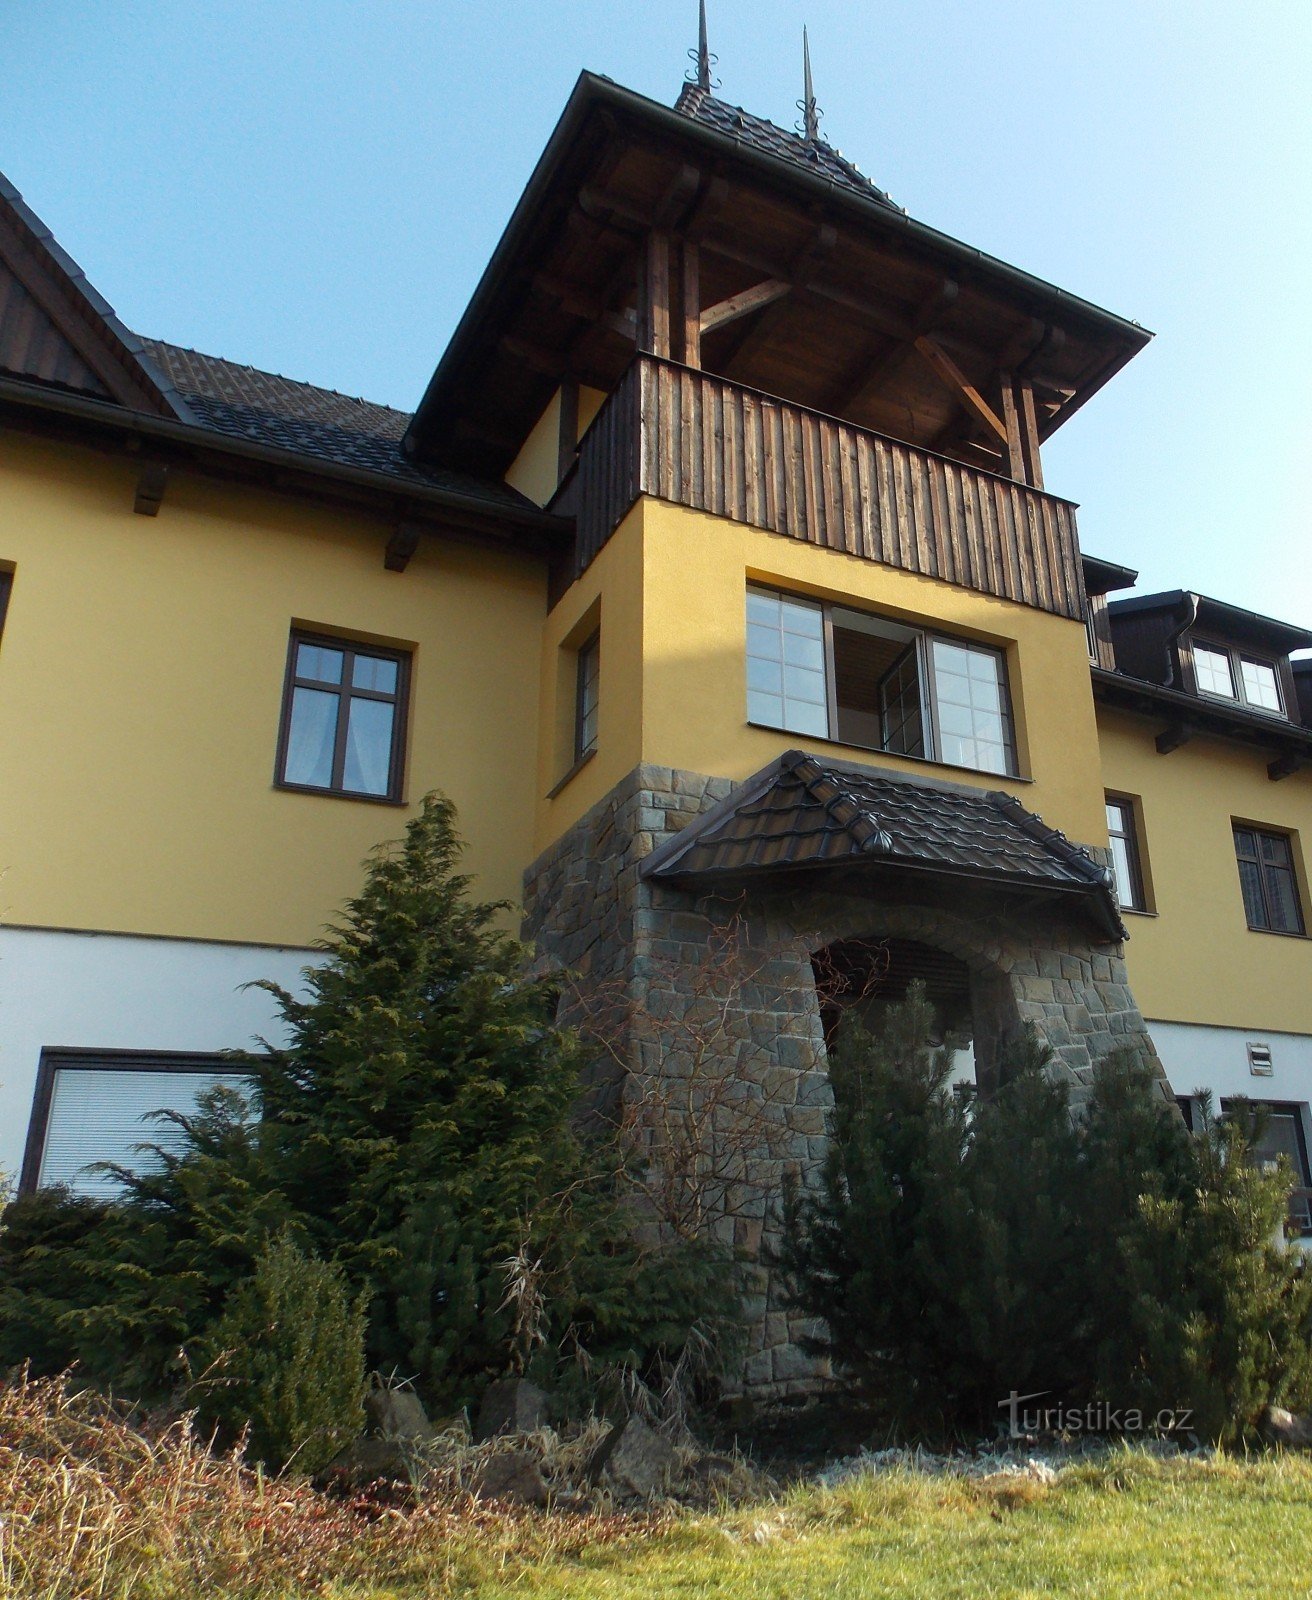 Valašský šenk et Hotel Ogar à Pozlovice près de Luhačovice